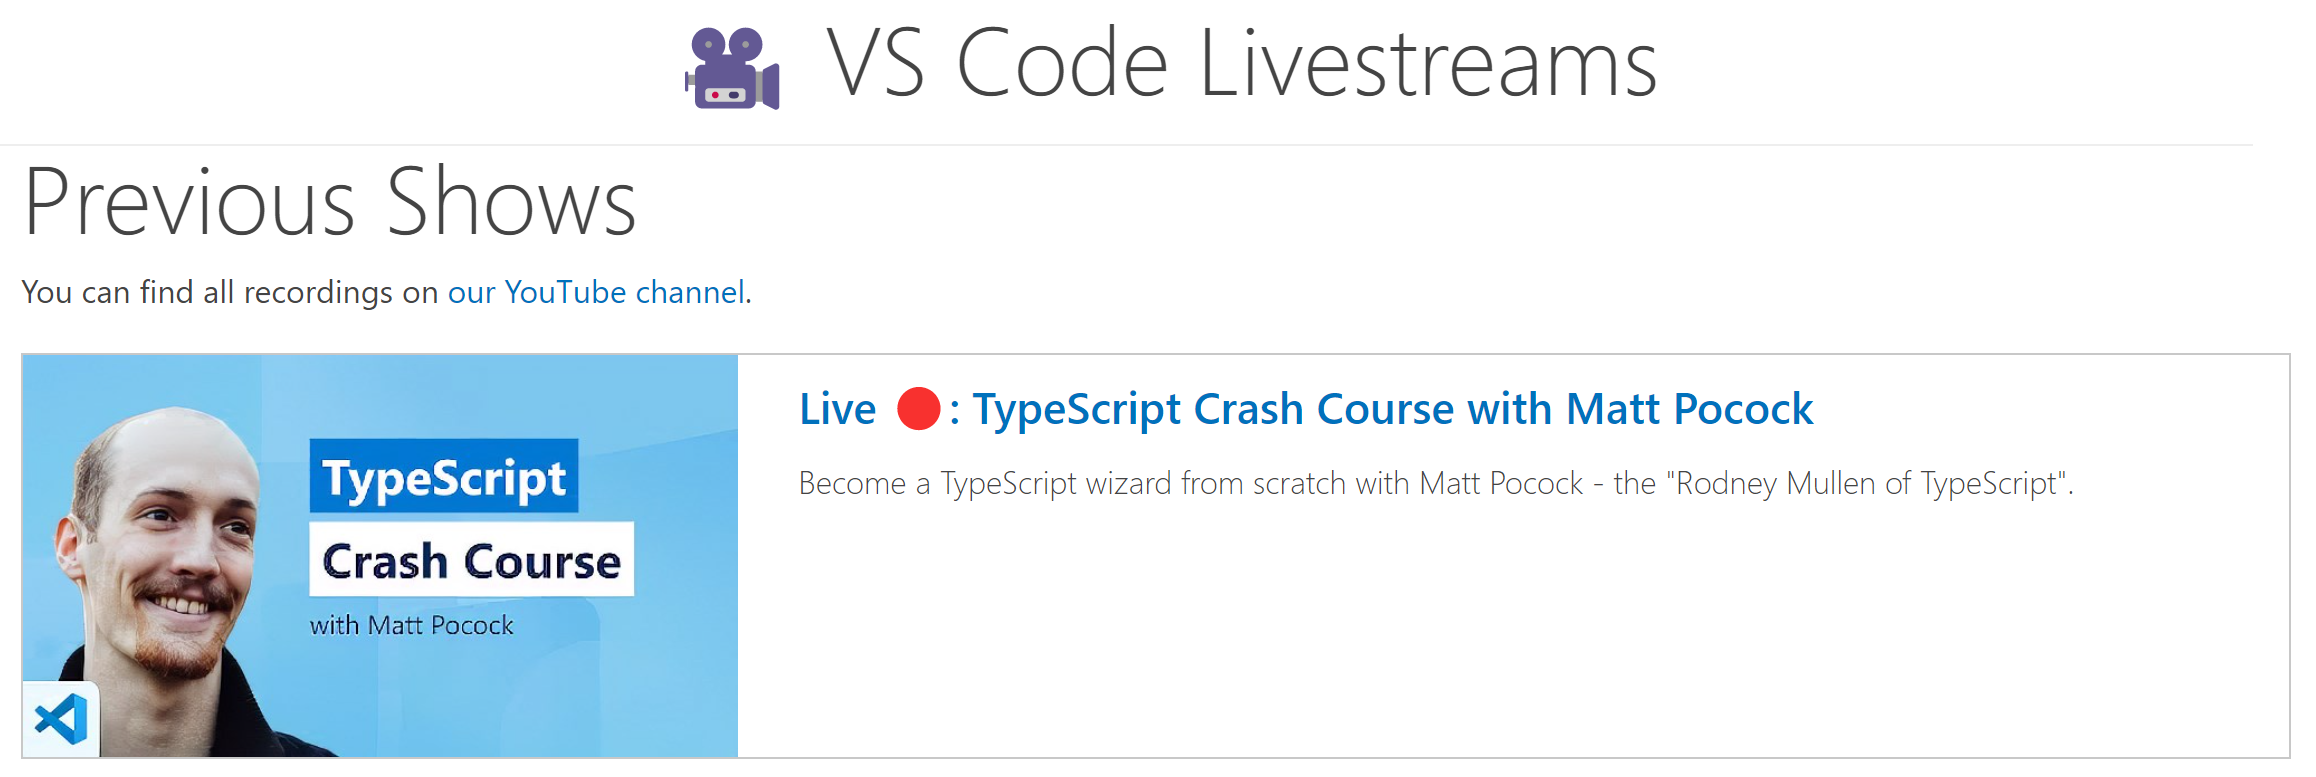 VS Code livestreams page